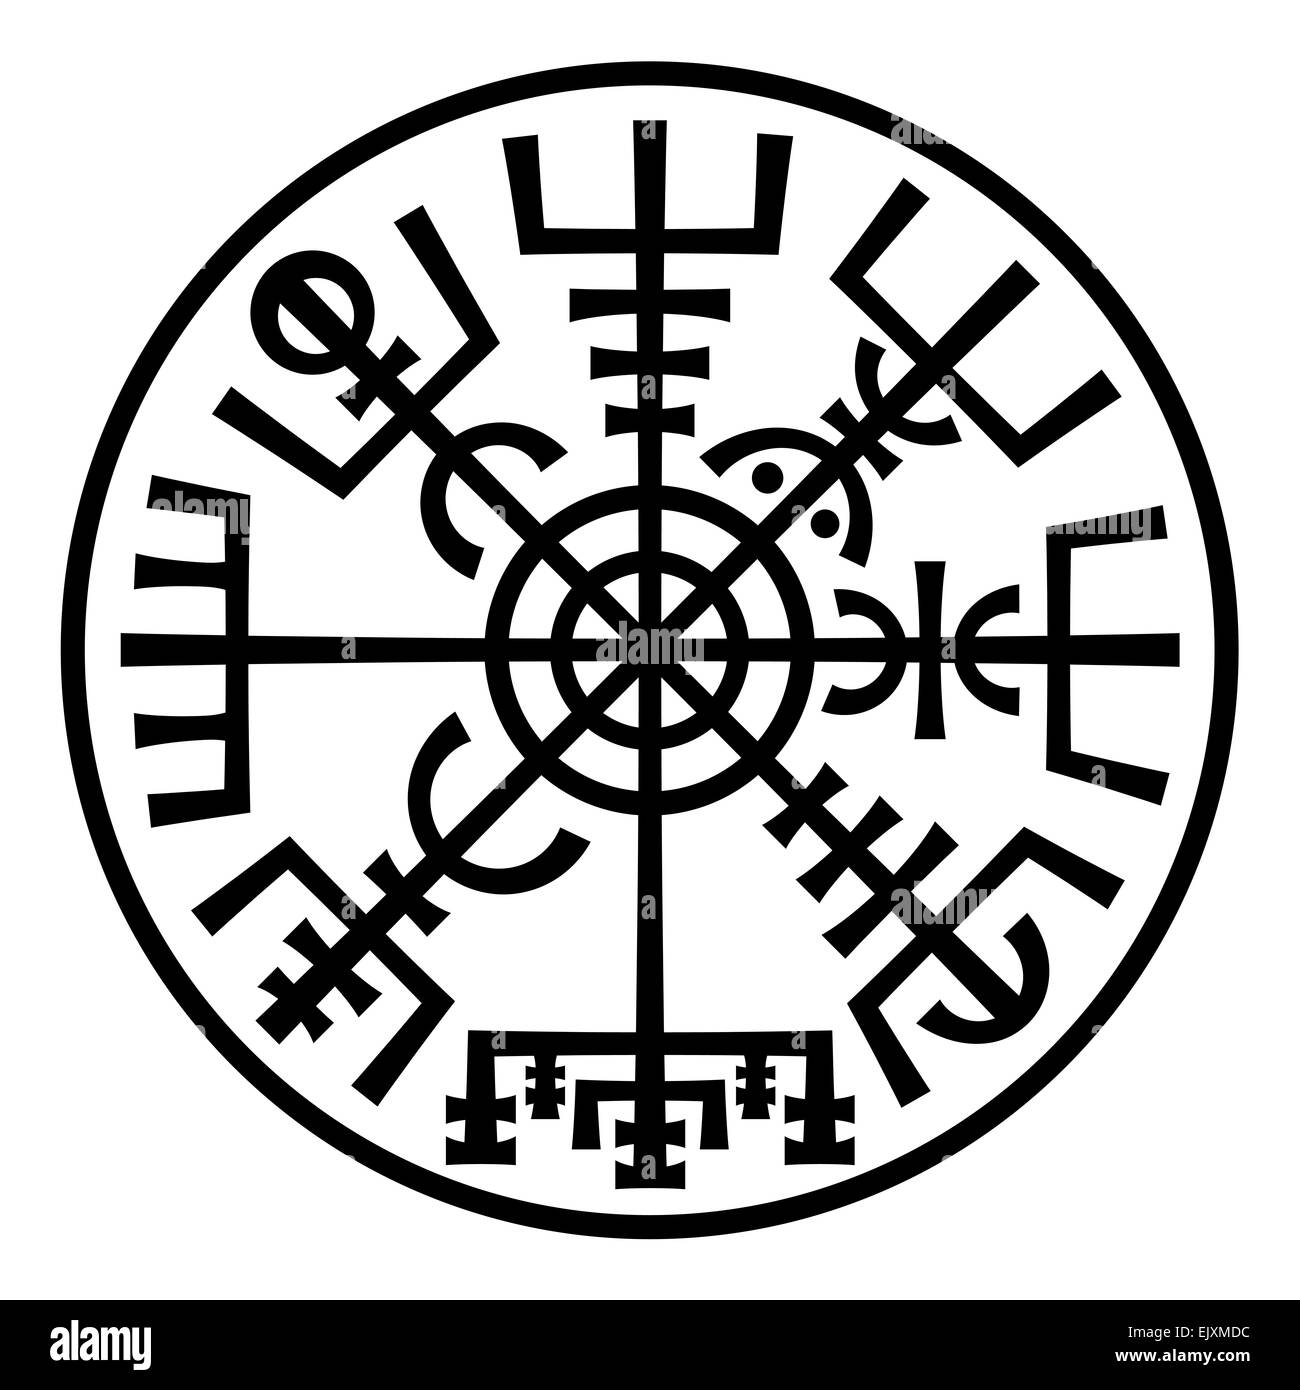 Symbole islandais Banque d'images noir et blanc - Alamy